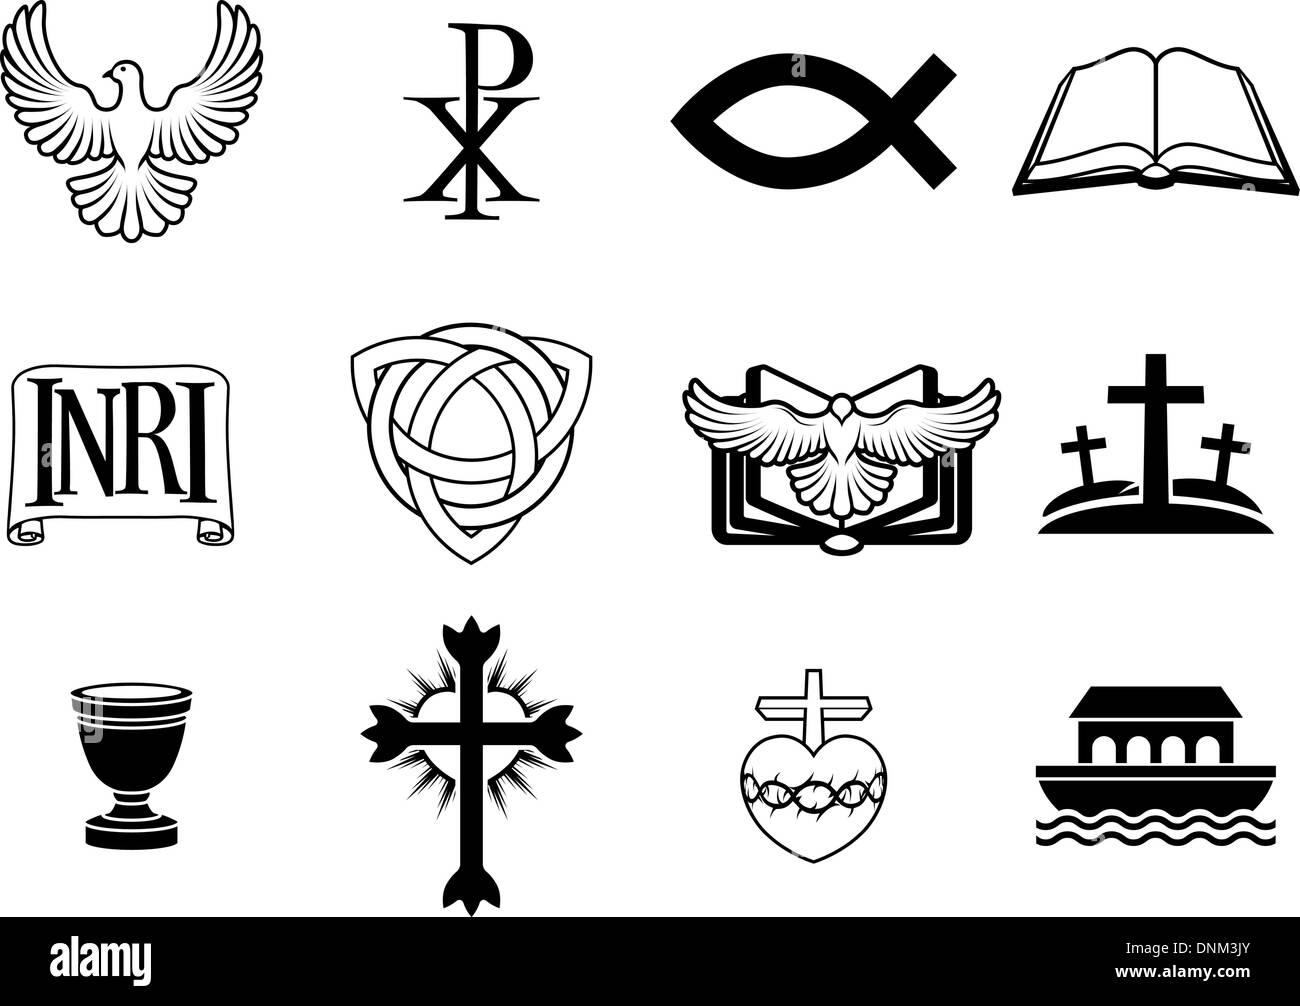 roman catholic symbols tattoos